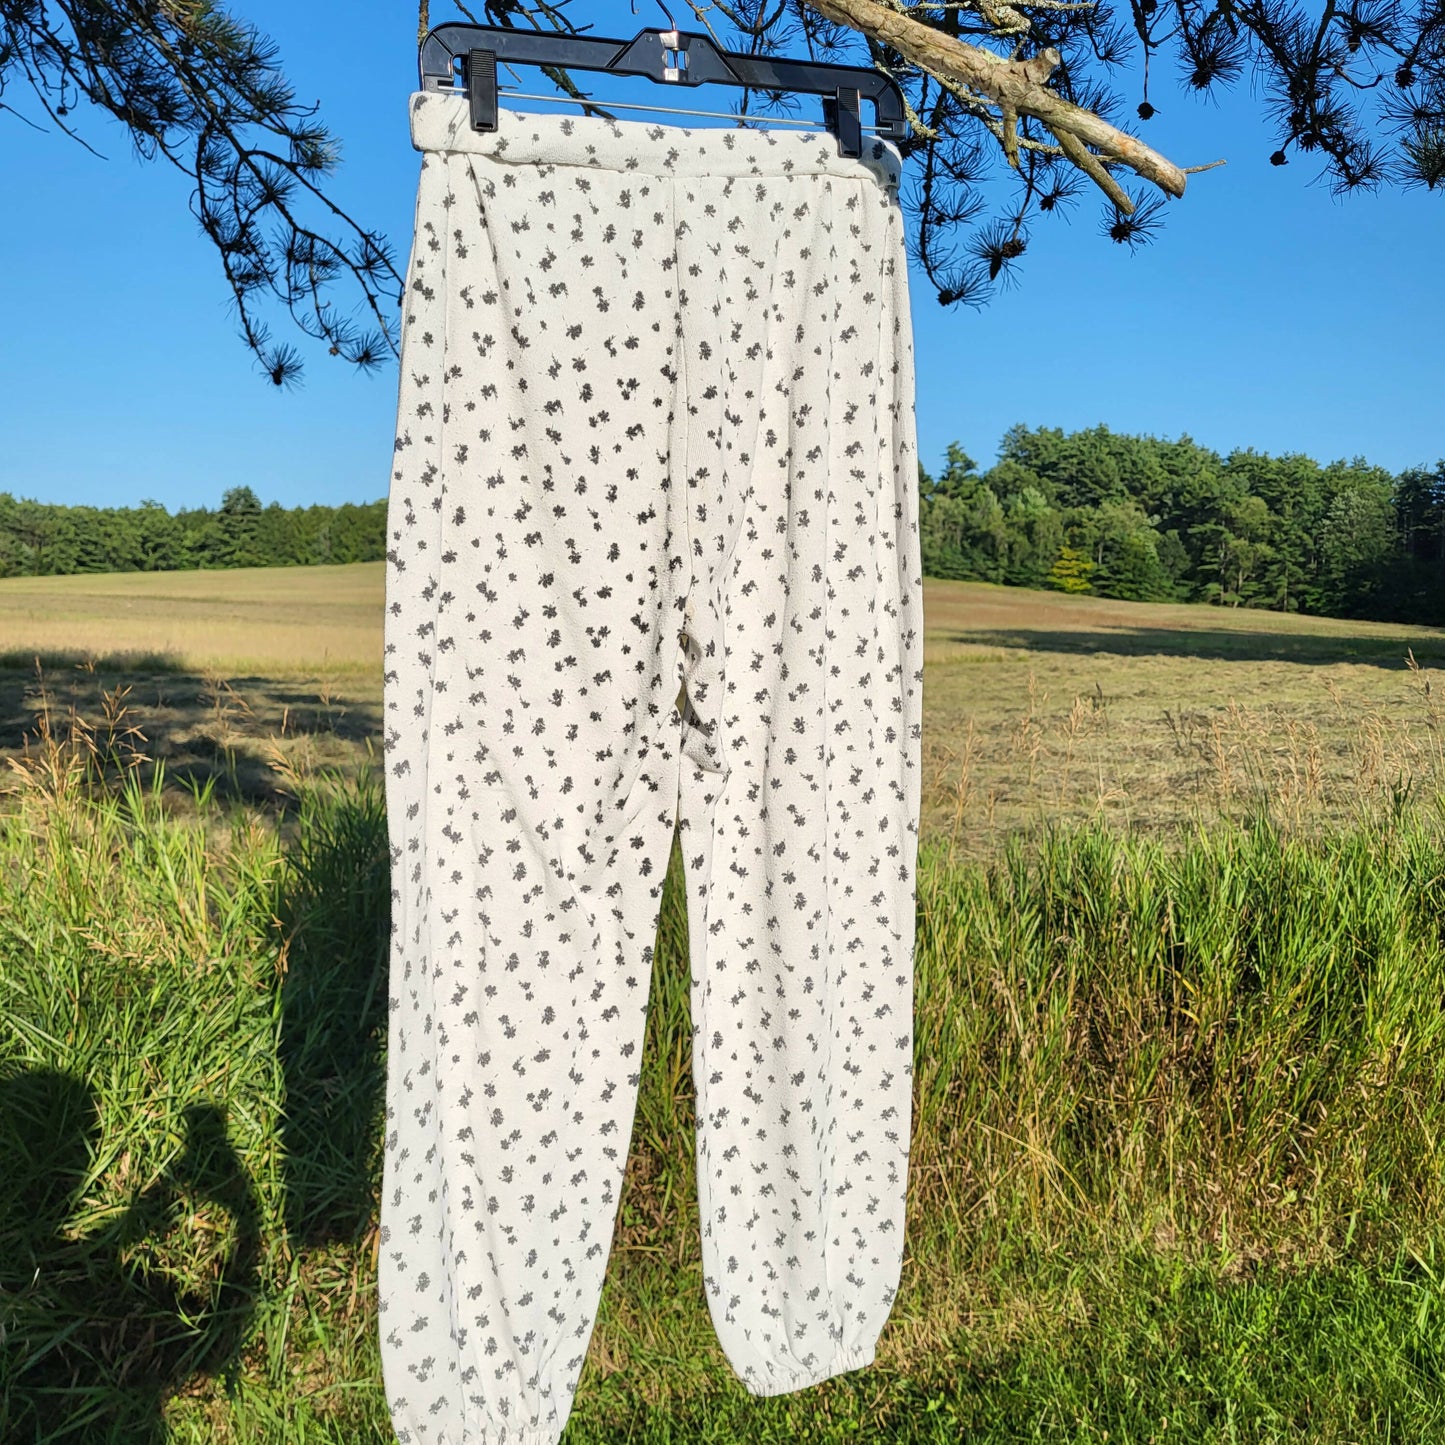 CeCe Floral Pajama Pants